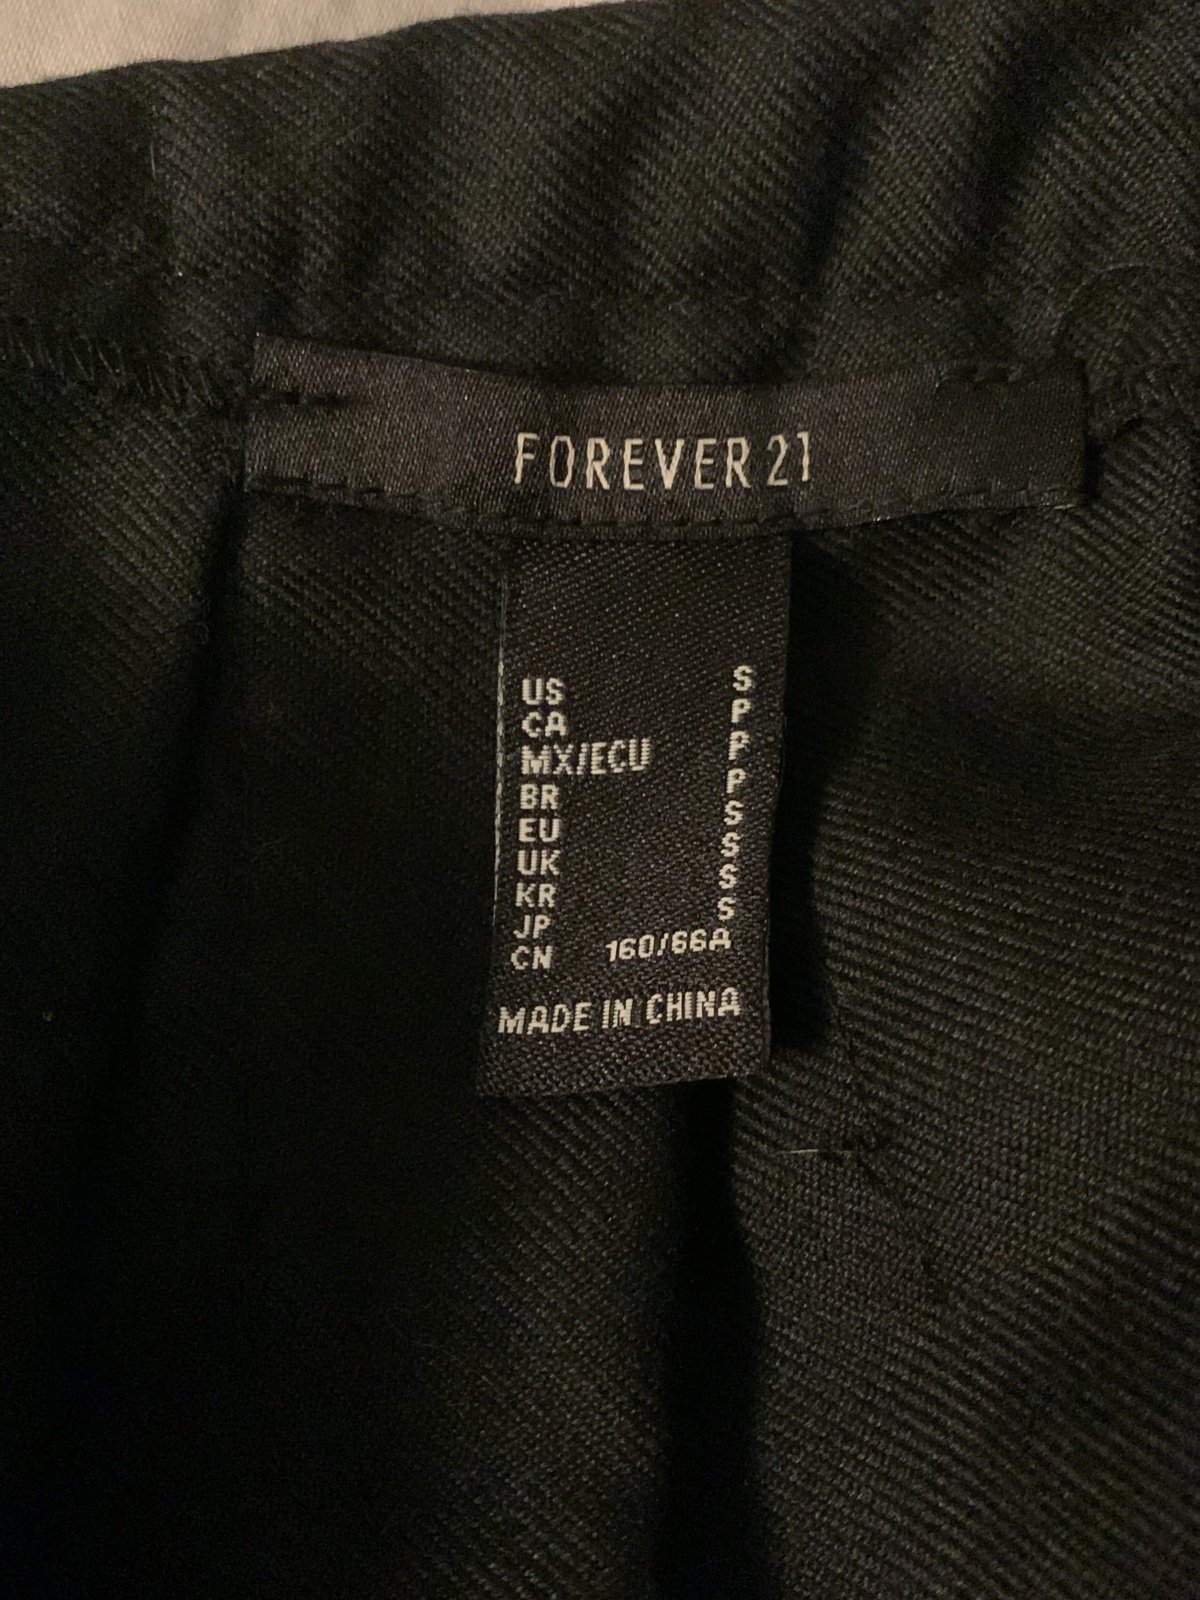 Custom Forever 21 black pleated skirt jCiIIVncW Online Shop